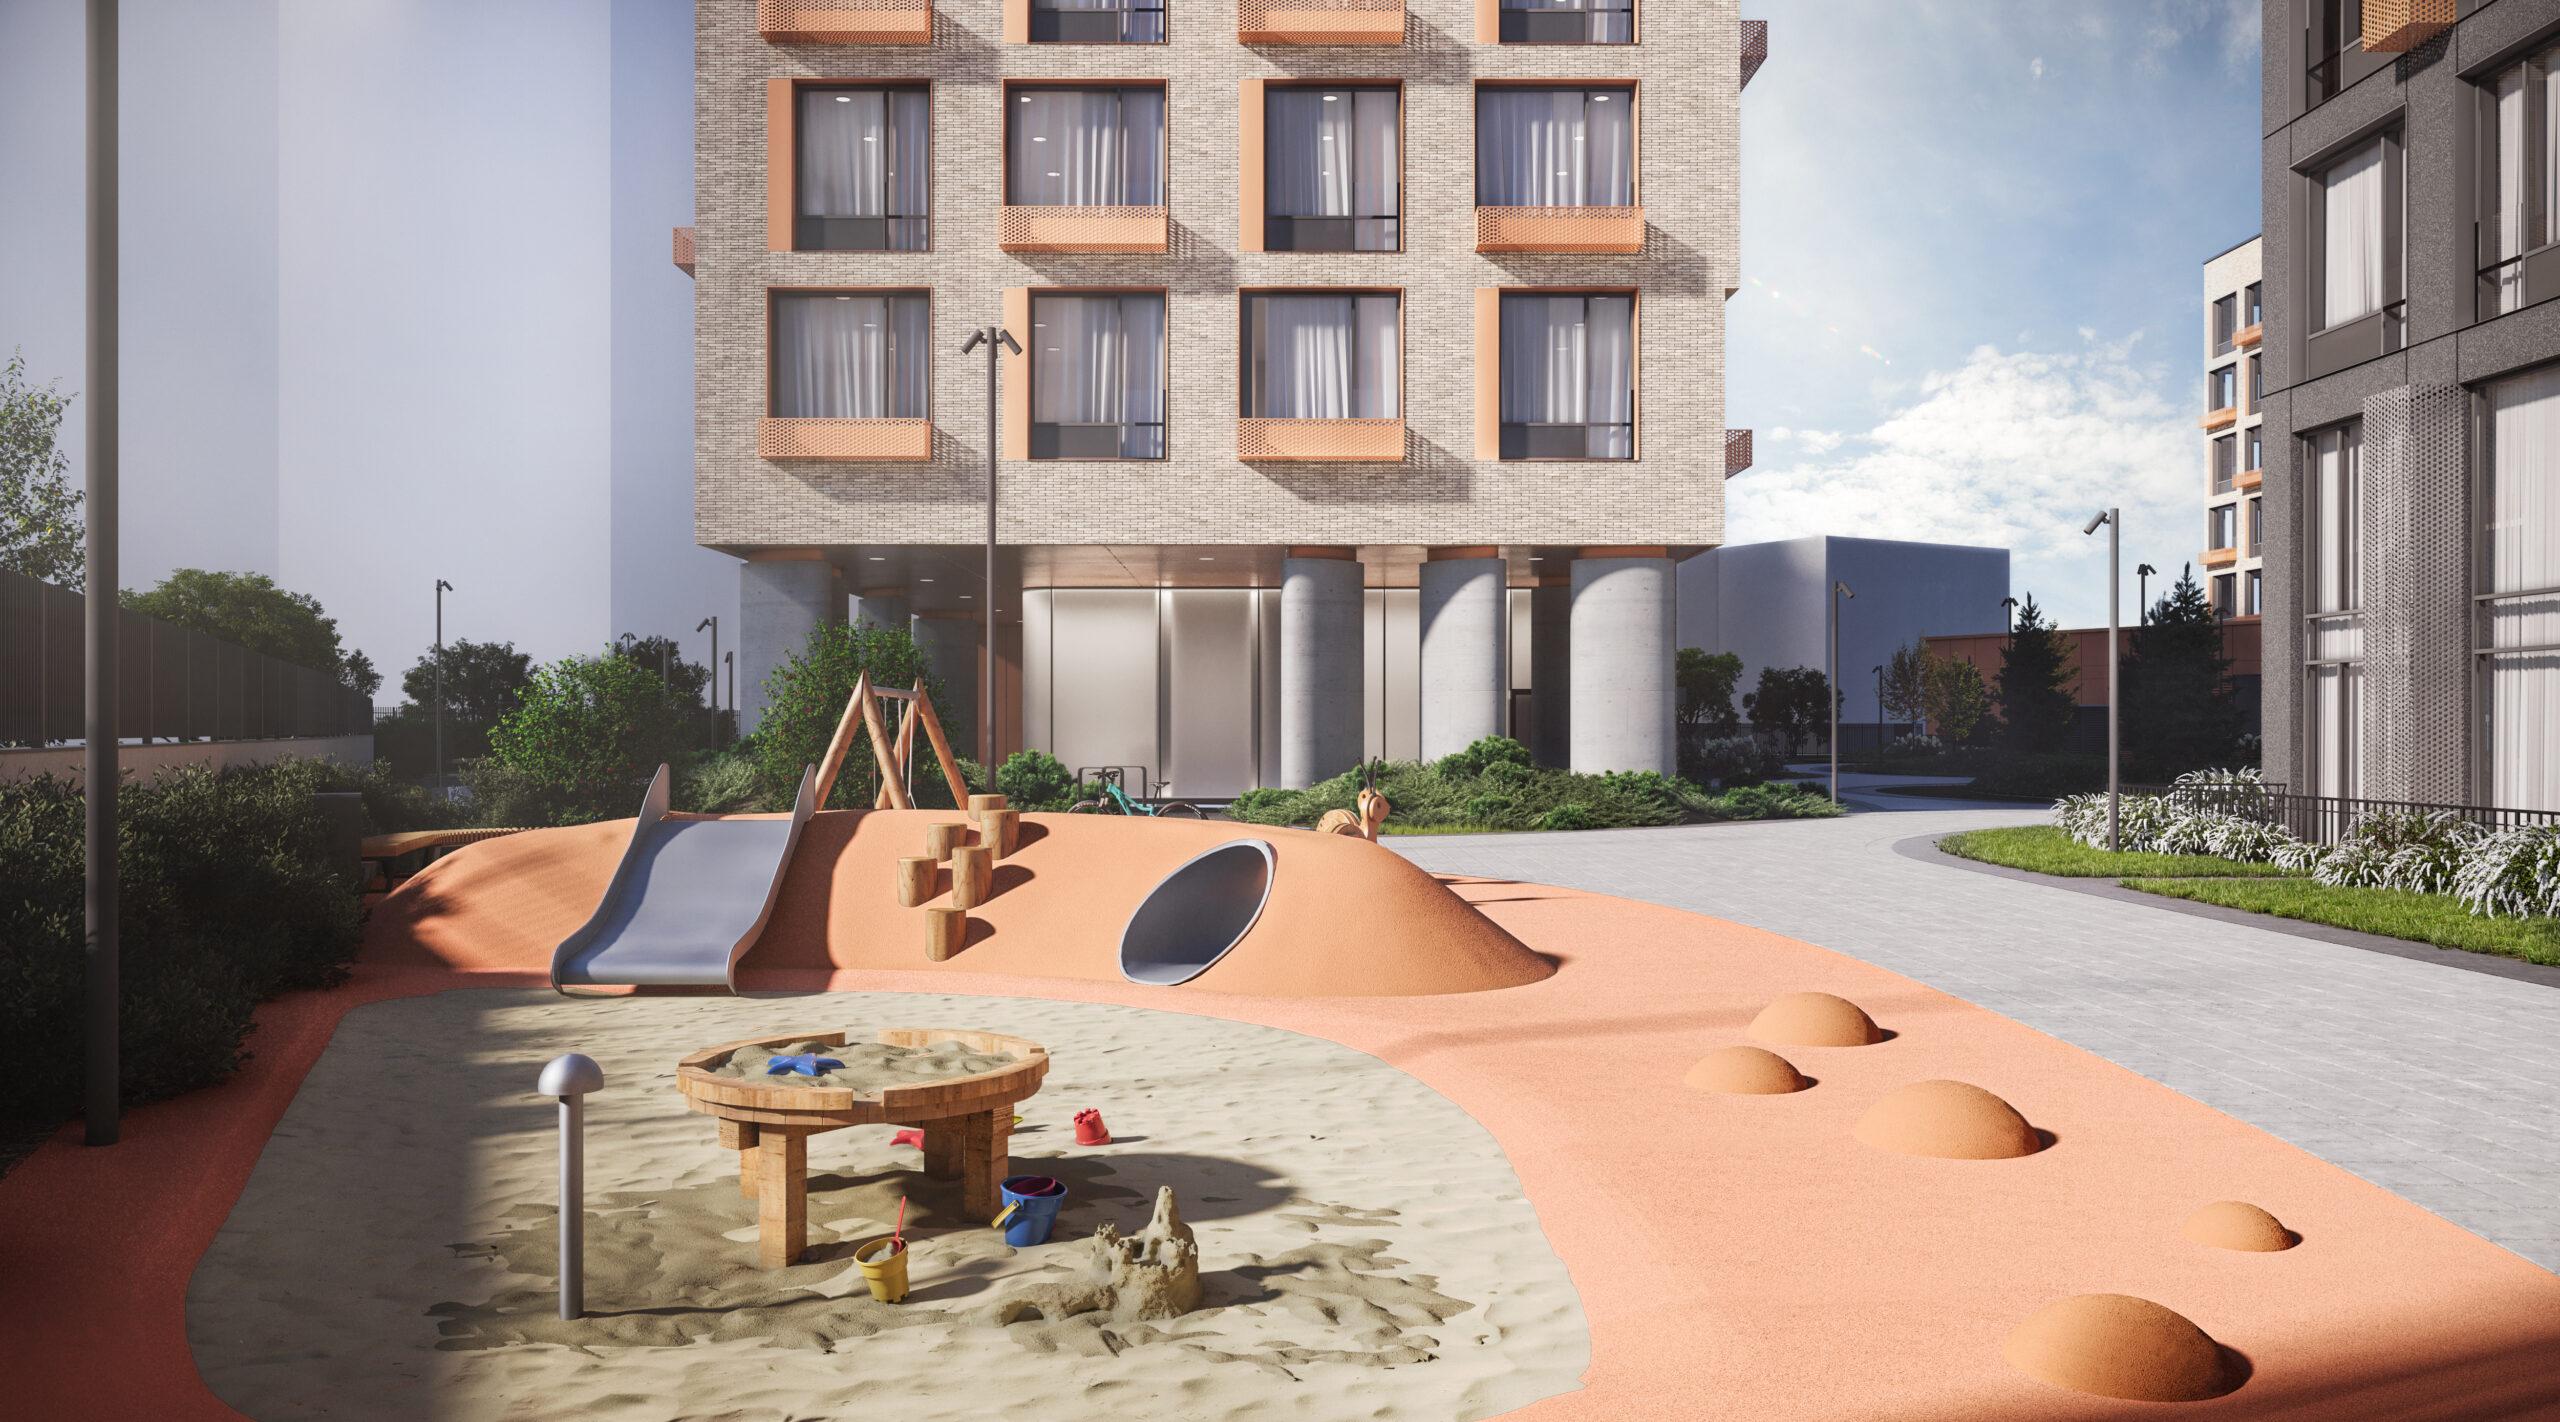 Игровая площадка с зоной для экспериментов с песком и водой появится в жилом комплексе на юго-востоке Москвы